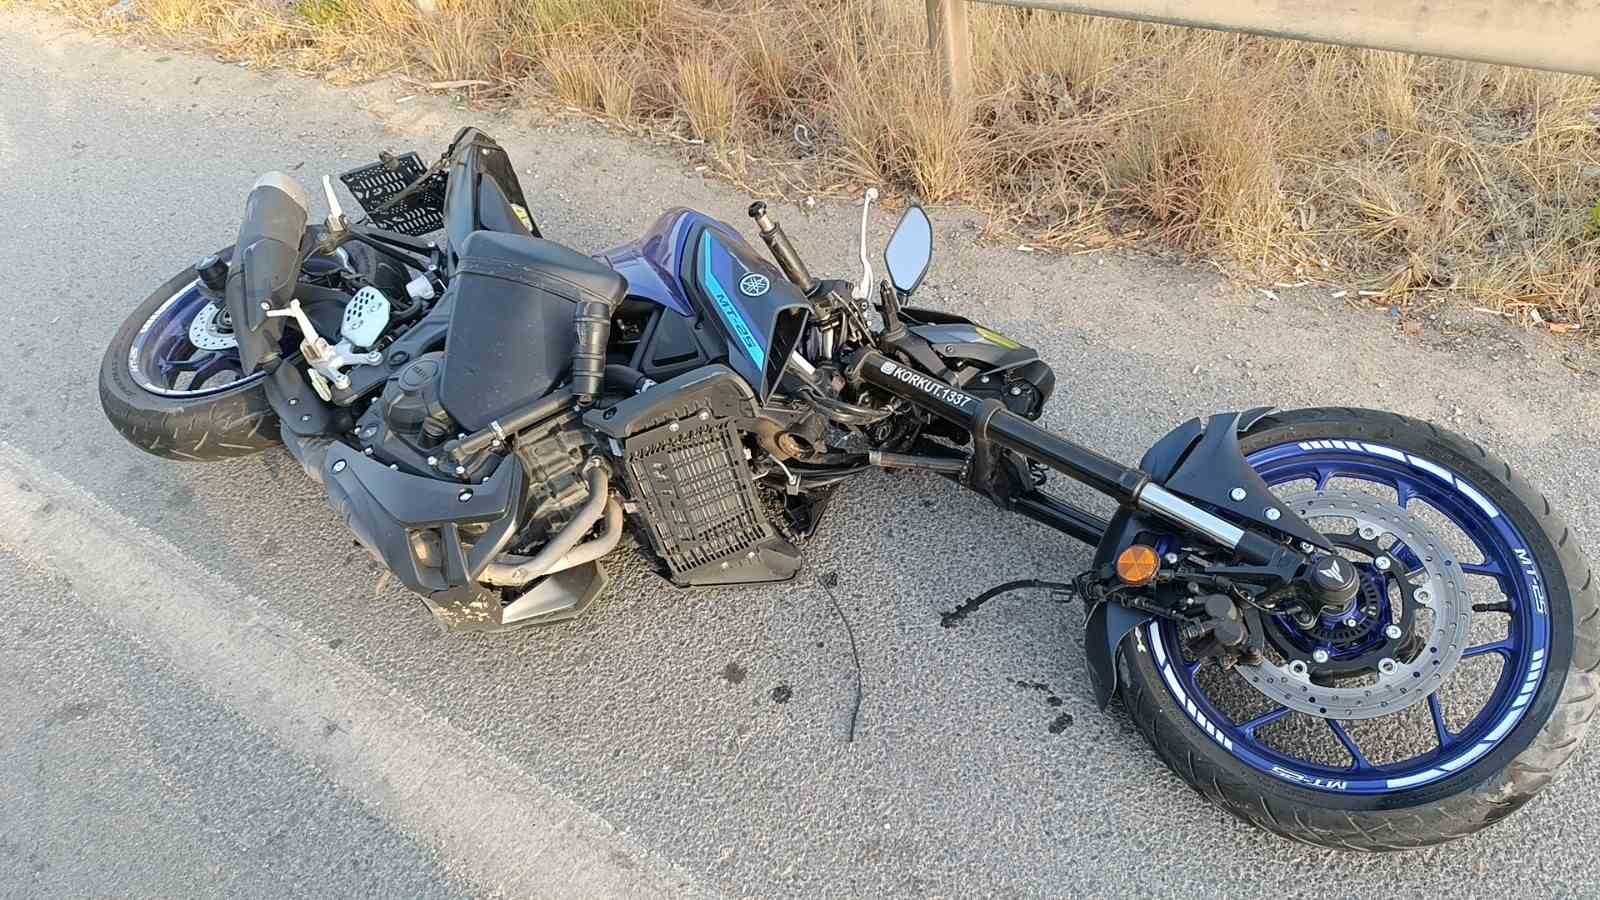 Manavgat çevreyolunda motosiklet kazası: 2 yaralı
